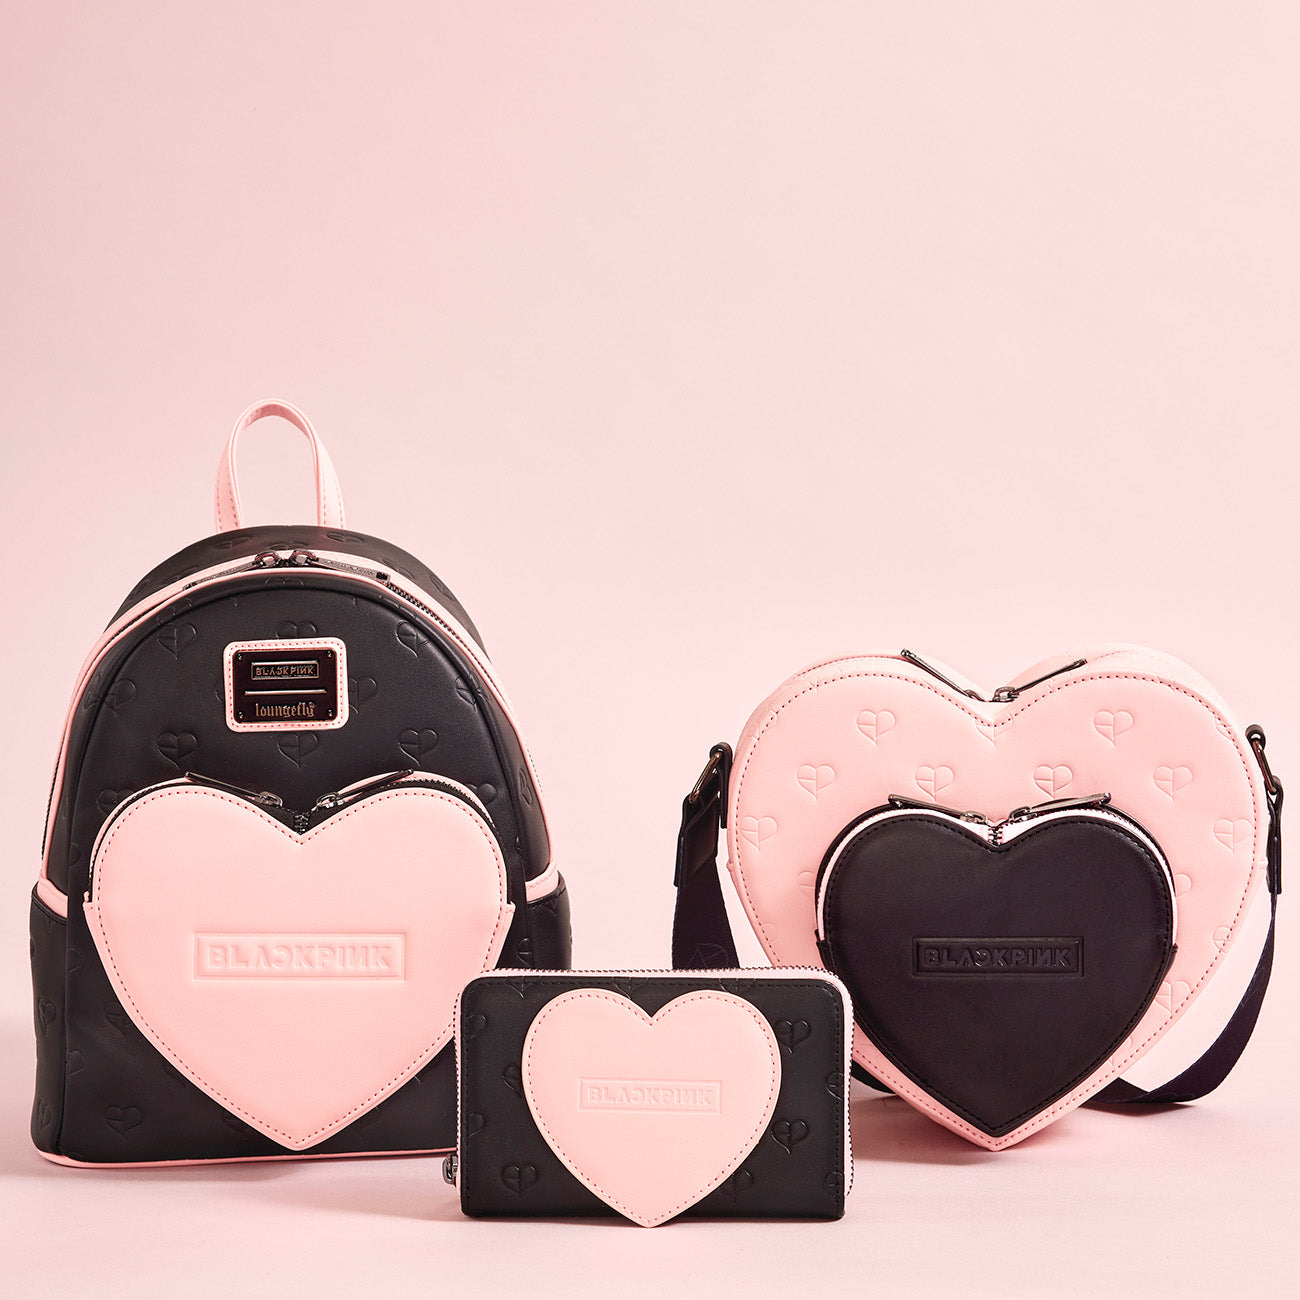 Blackpink Heart Mini Backpack | Funko EU